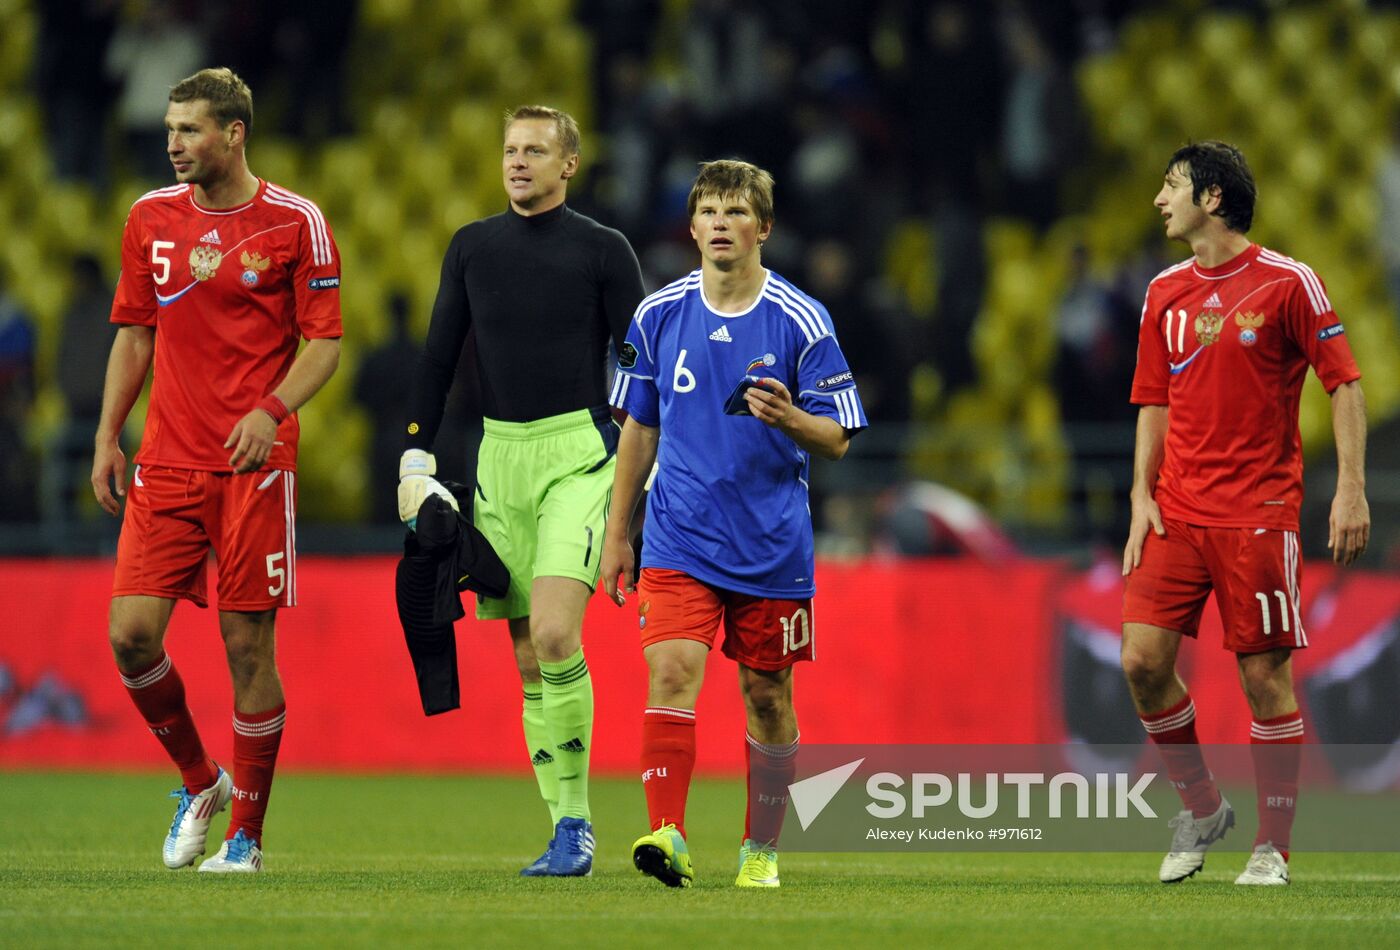 UEFA Euro 2012 qualifying round. Russia vs. Andorra